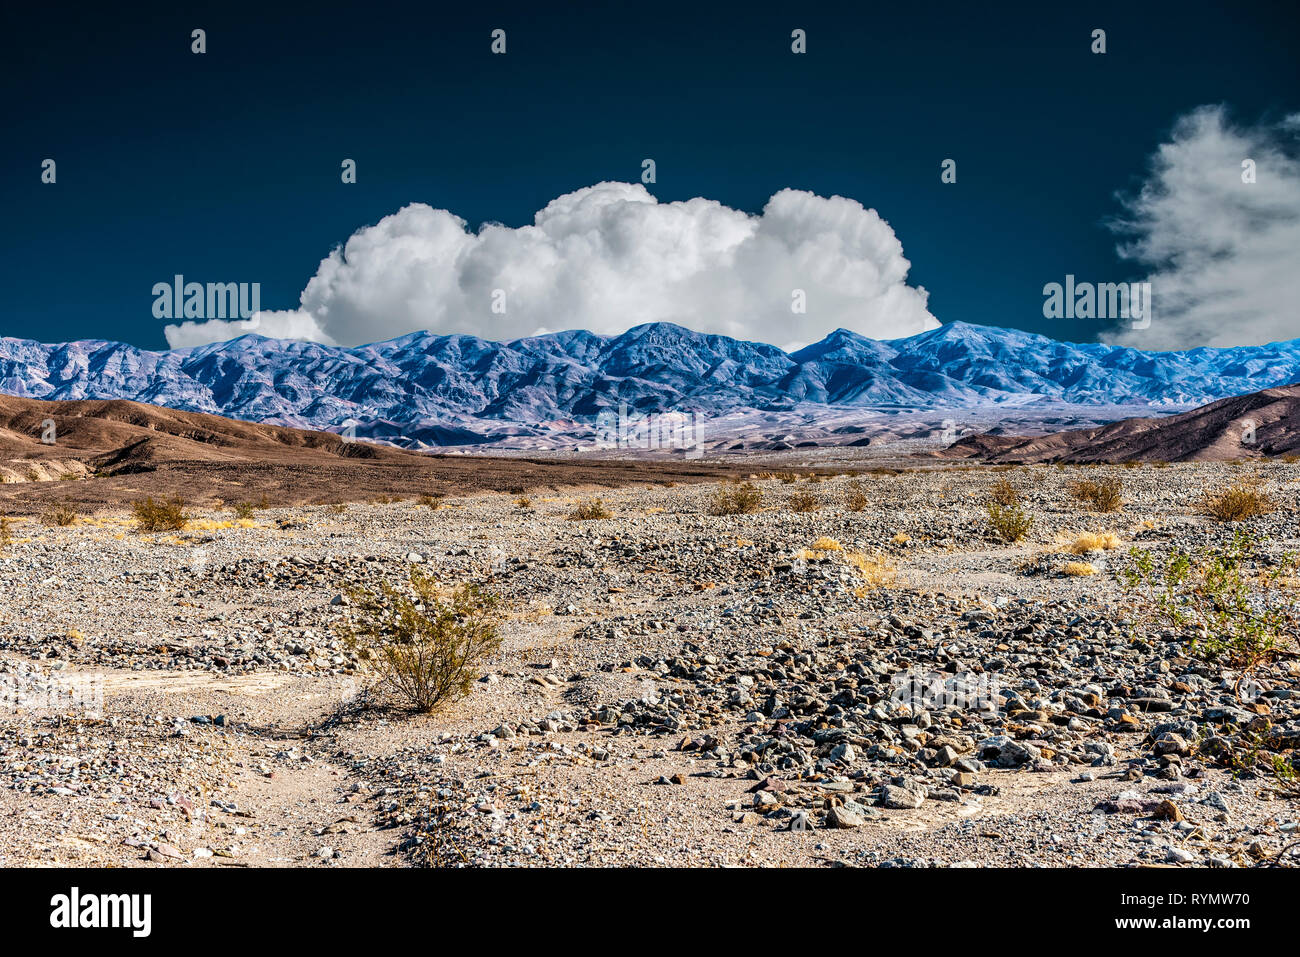 Infrarouge, vallée désertique rocheux avec brown hills place à des montagnes bleu sombre sous ciel bleu avec des nuages blancs moelleux. Banque D'Images